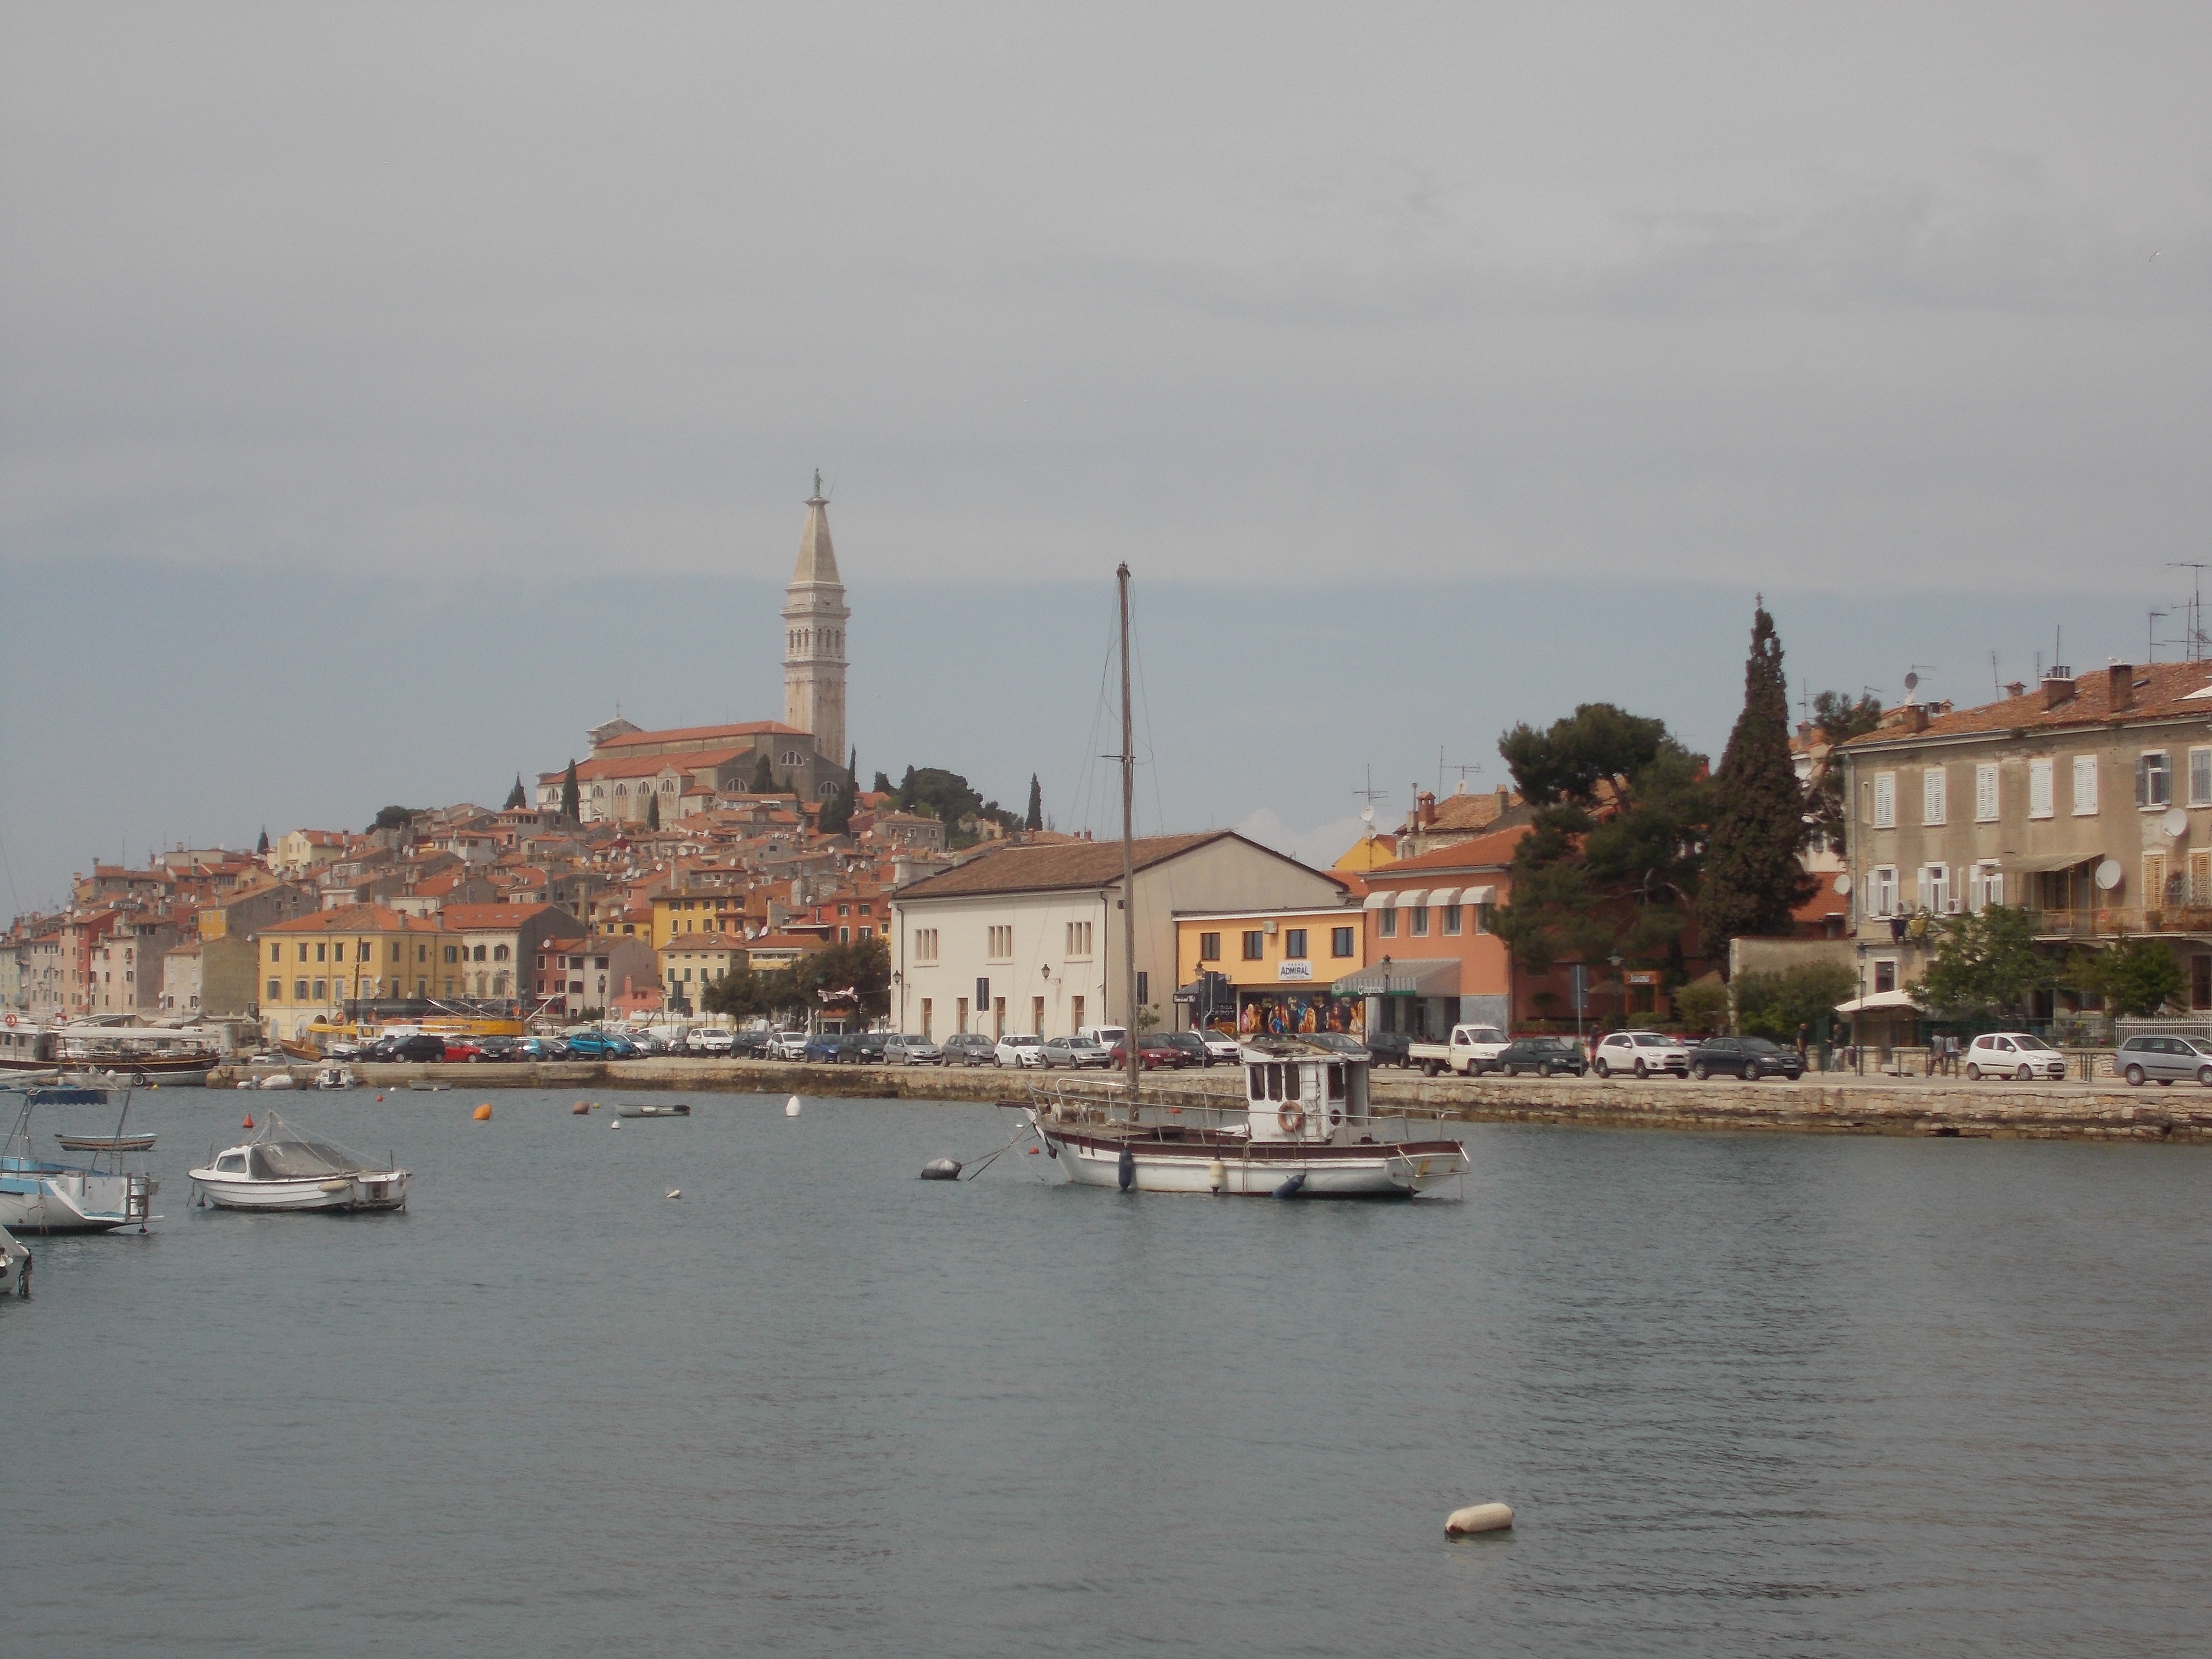 Boats and city of Rovinj